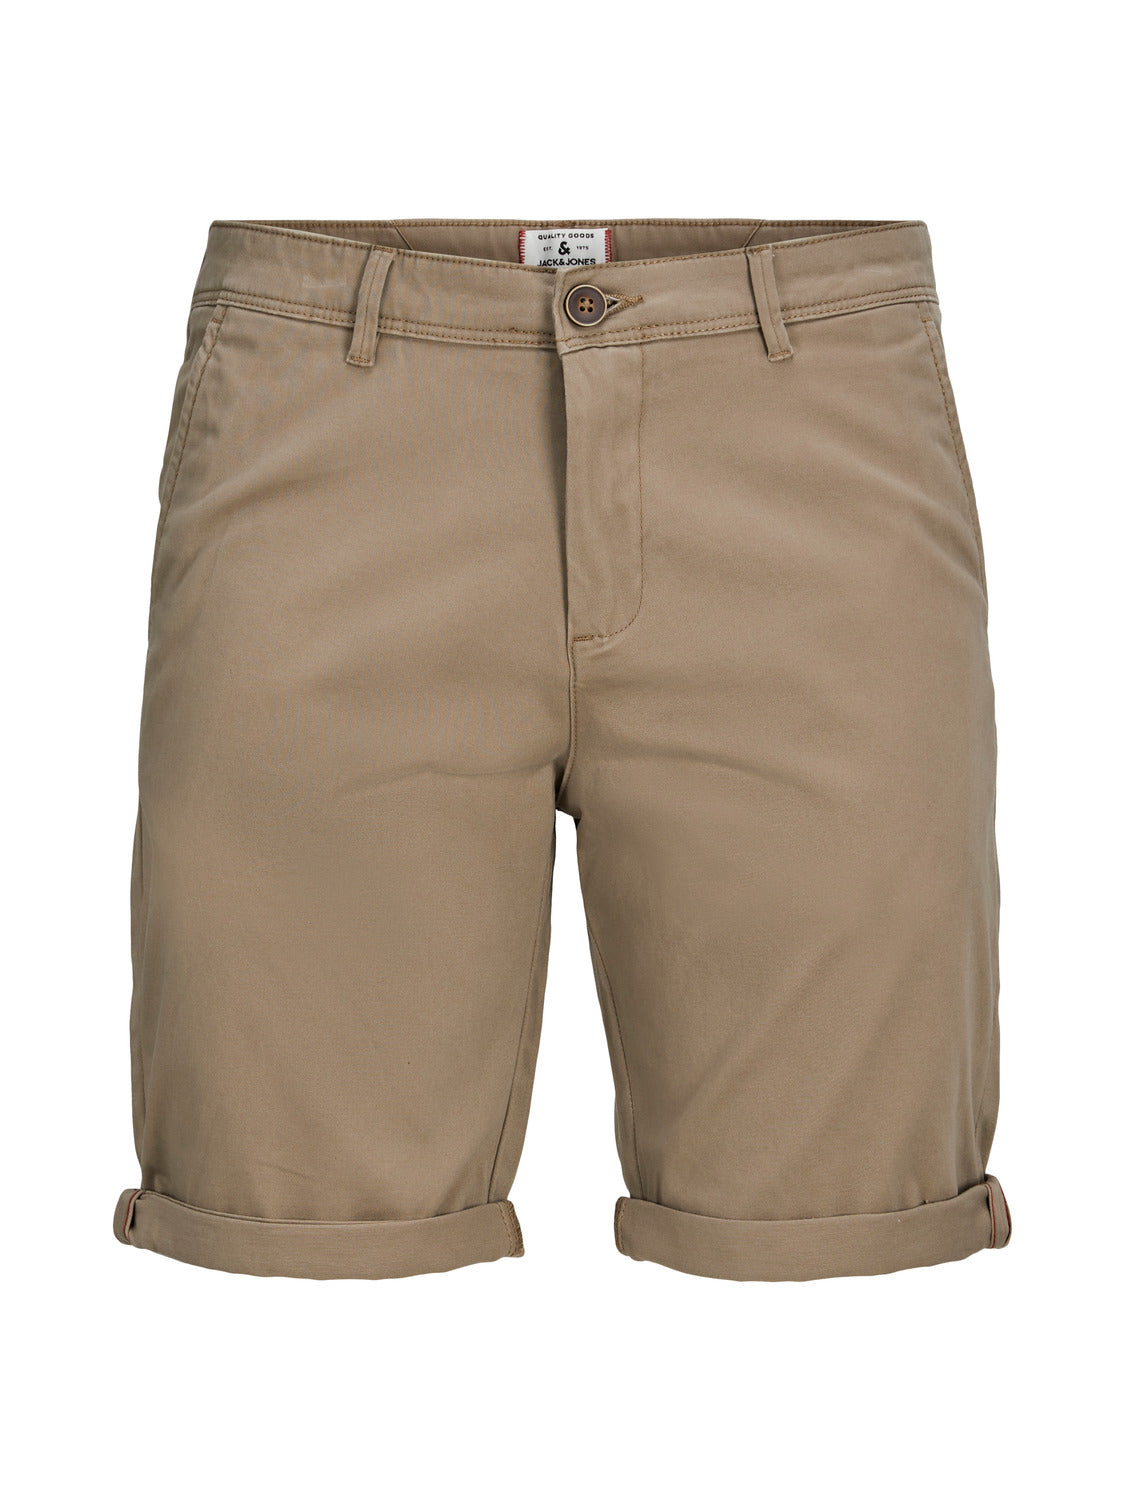 Pantalones cortos chinos beige - JPSTBOWIE